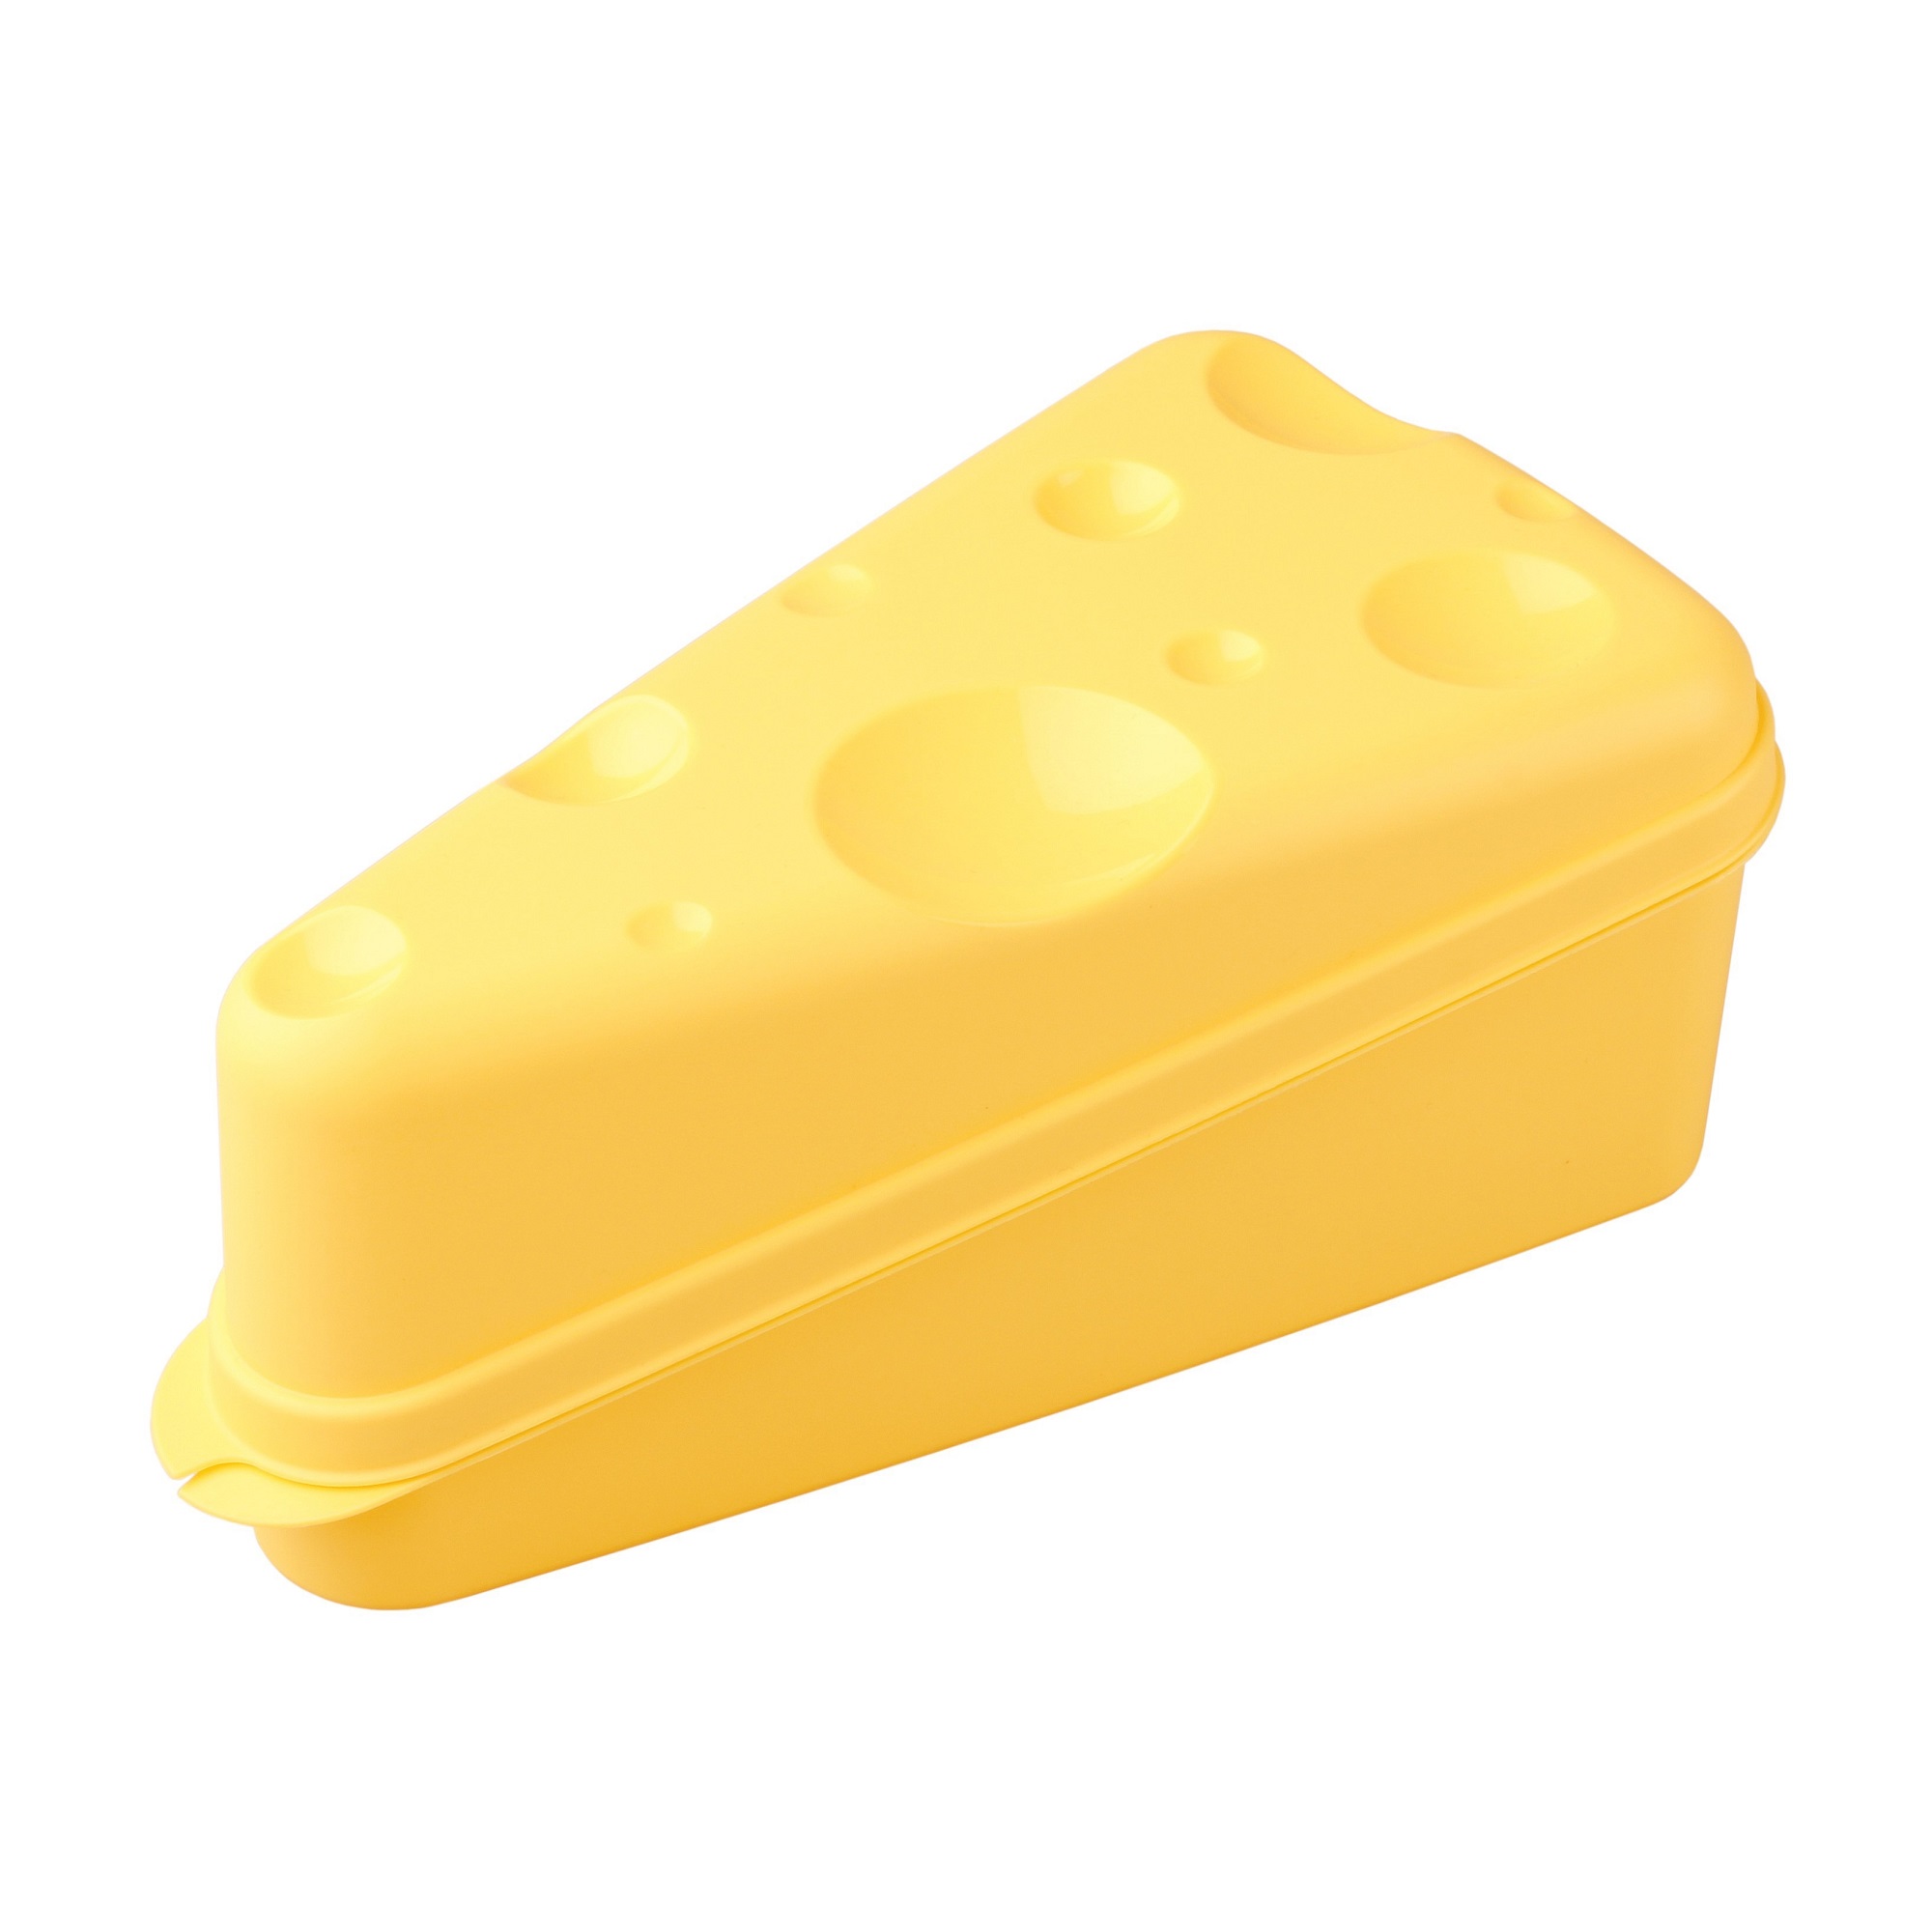 Контейнер Бытпласт для сыра (4312951) контейнер бытпласт для сыра 4312951